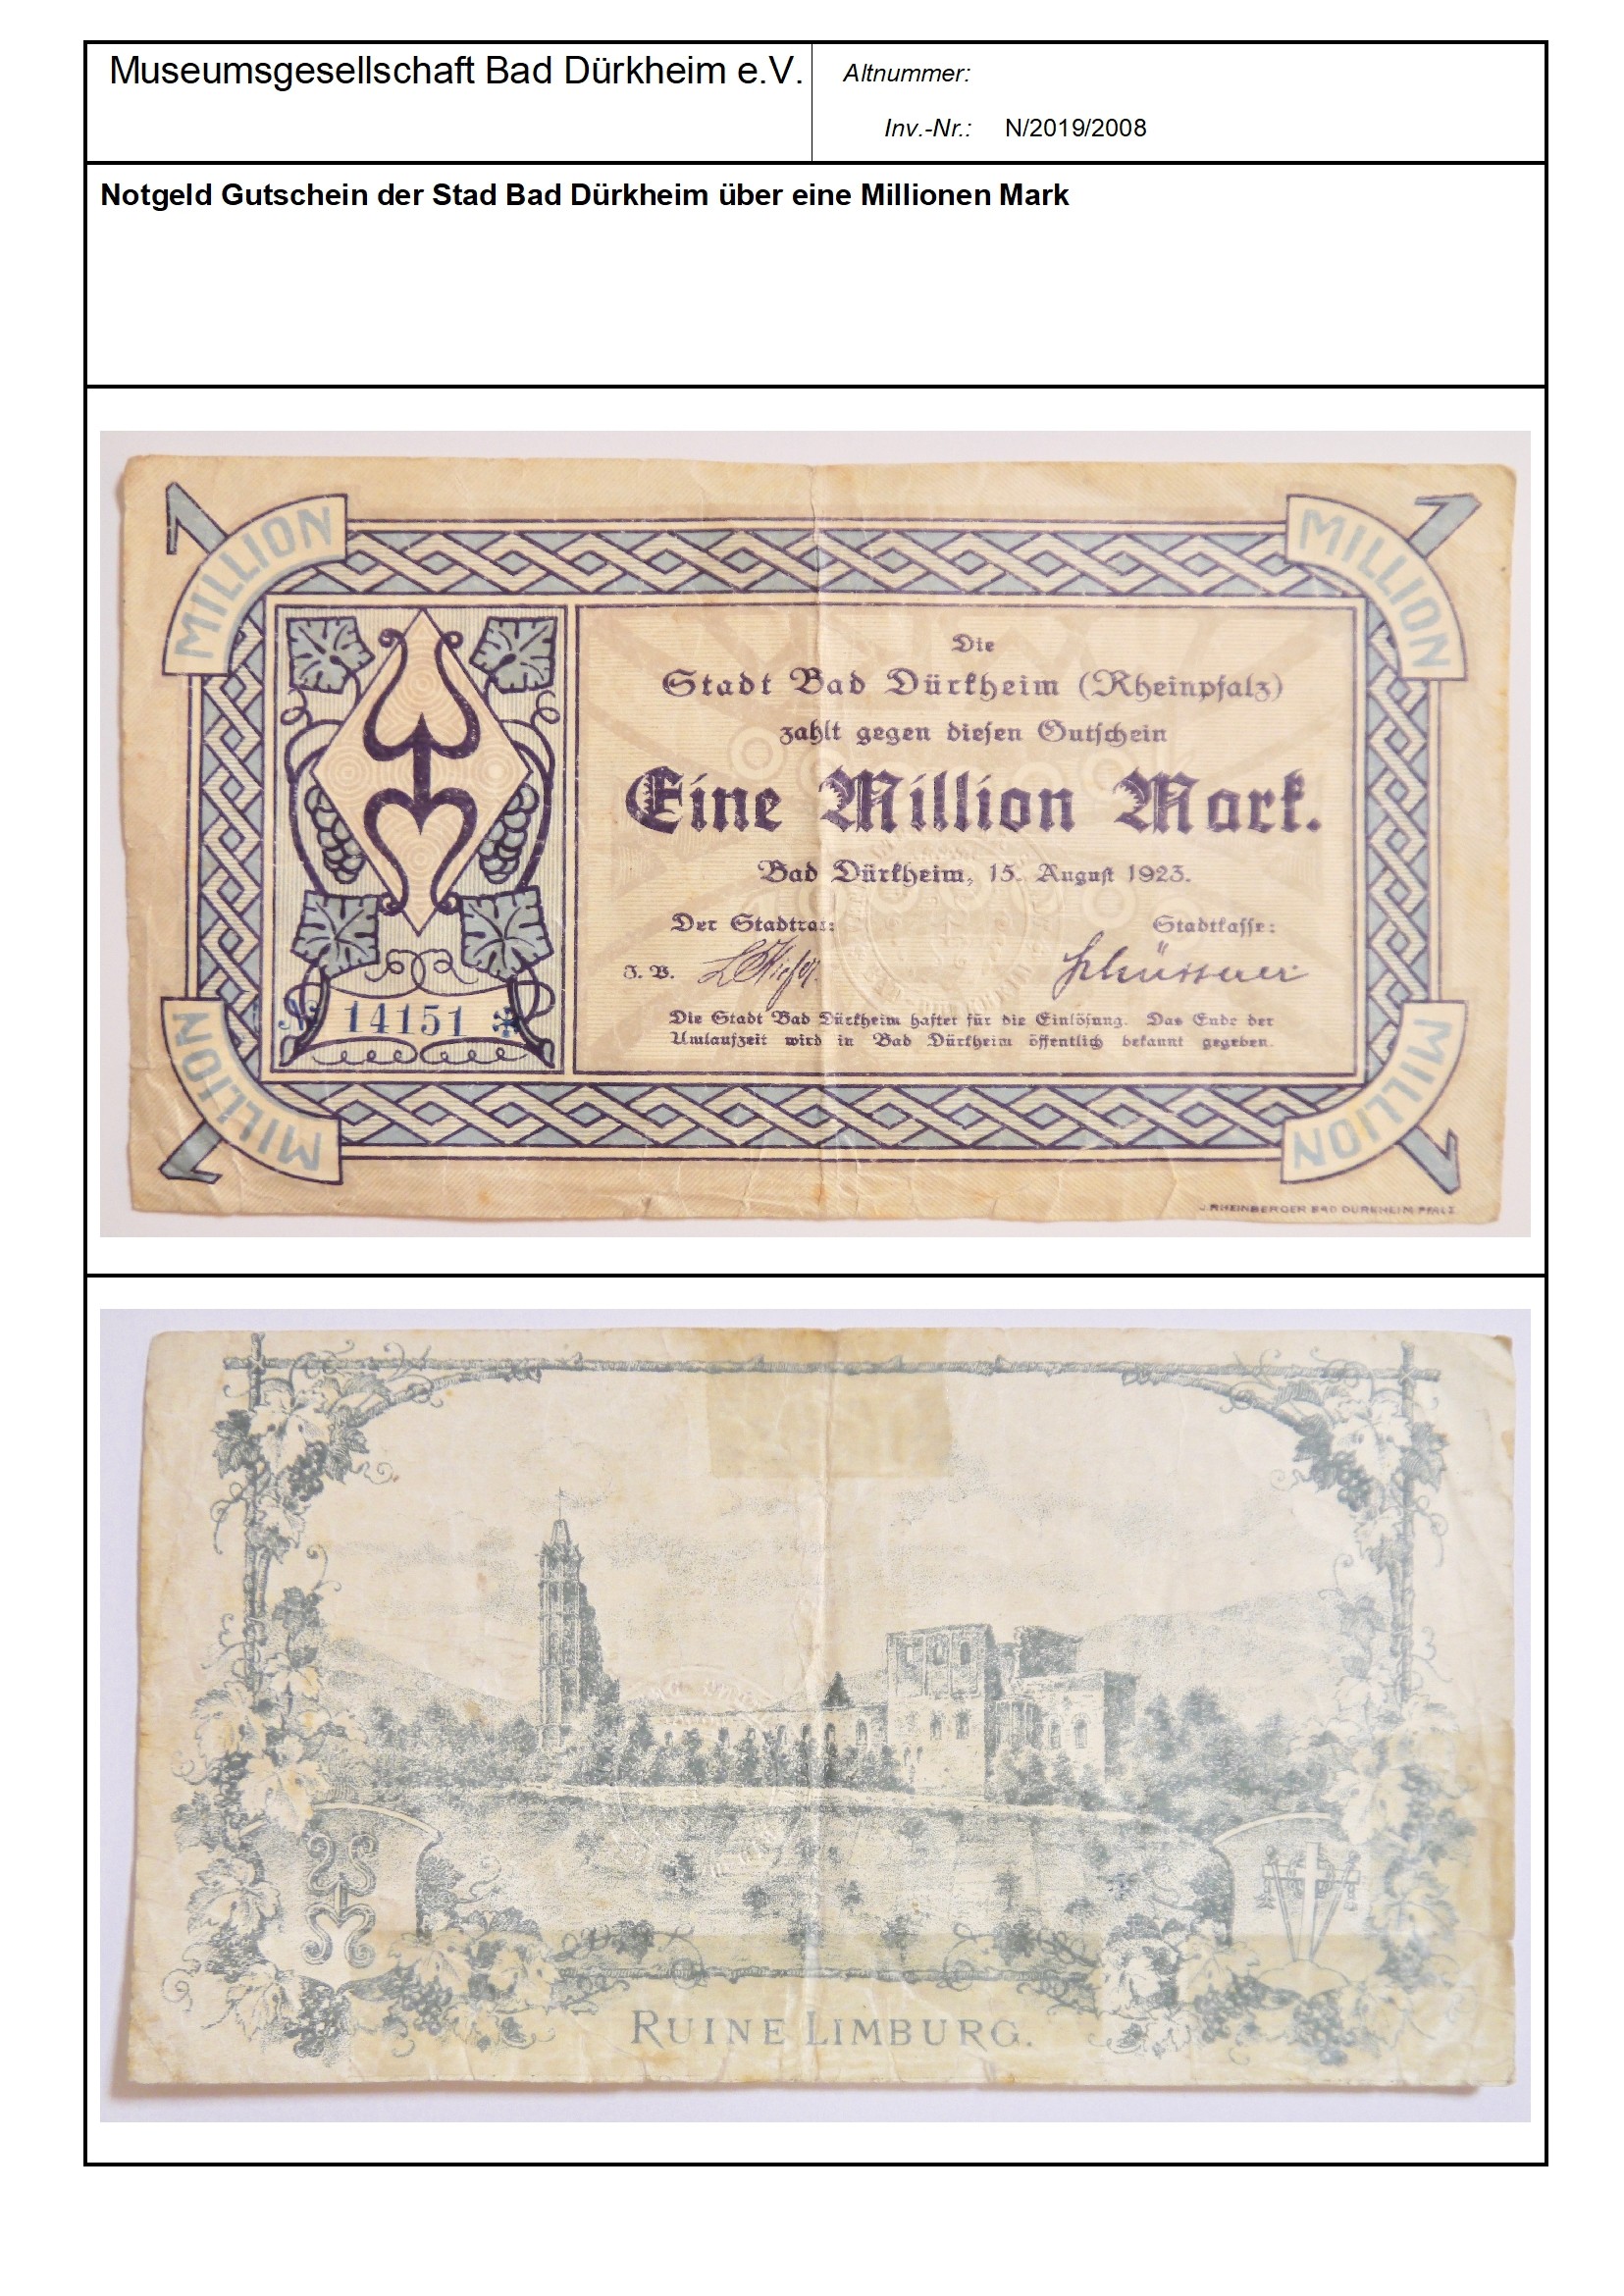 Notgeld Gutschein der Stad Bad Dürkheim über eine Millionen Mark
Serien-Nummer: 14151 (Museumsgesellschaft Bad Dürkheim e.V. CC BY-NC-SA)